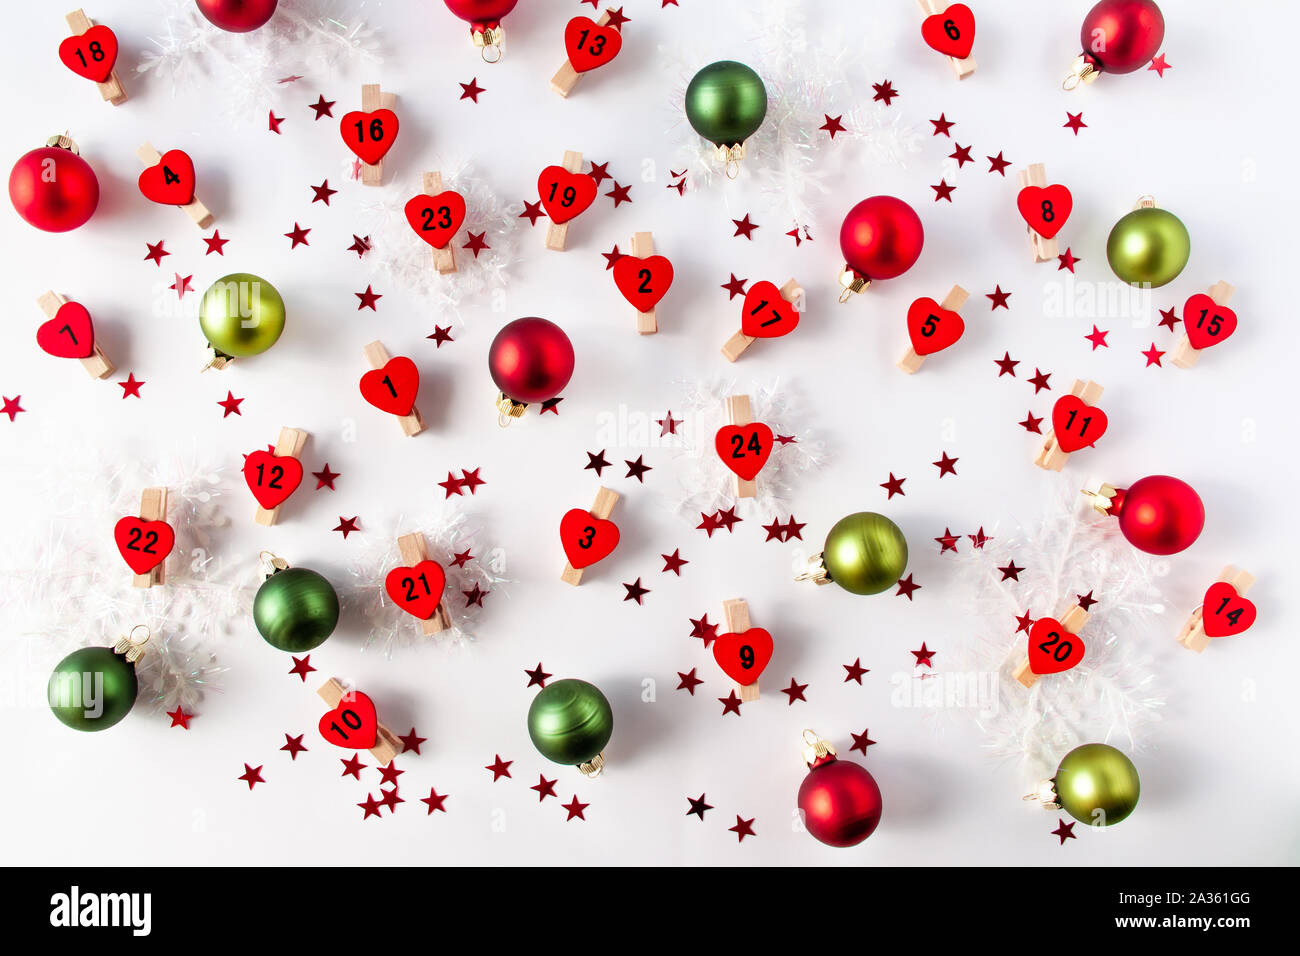 Avvento calandra numeri sul cuore rosso da neve decorativa e palle di Natale di colori rosso e verde. Concetto di Natale lay piatto Foto Stock